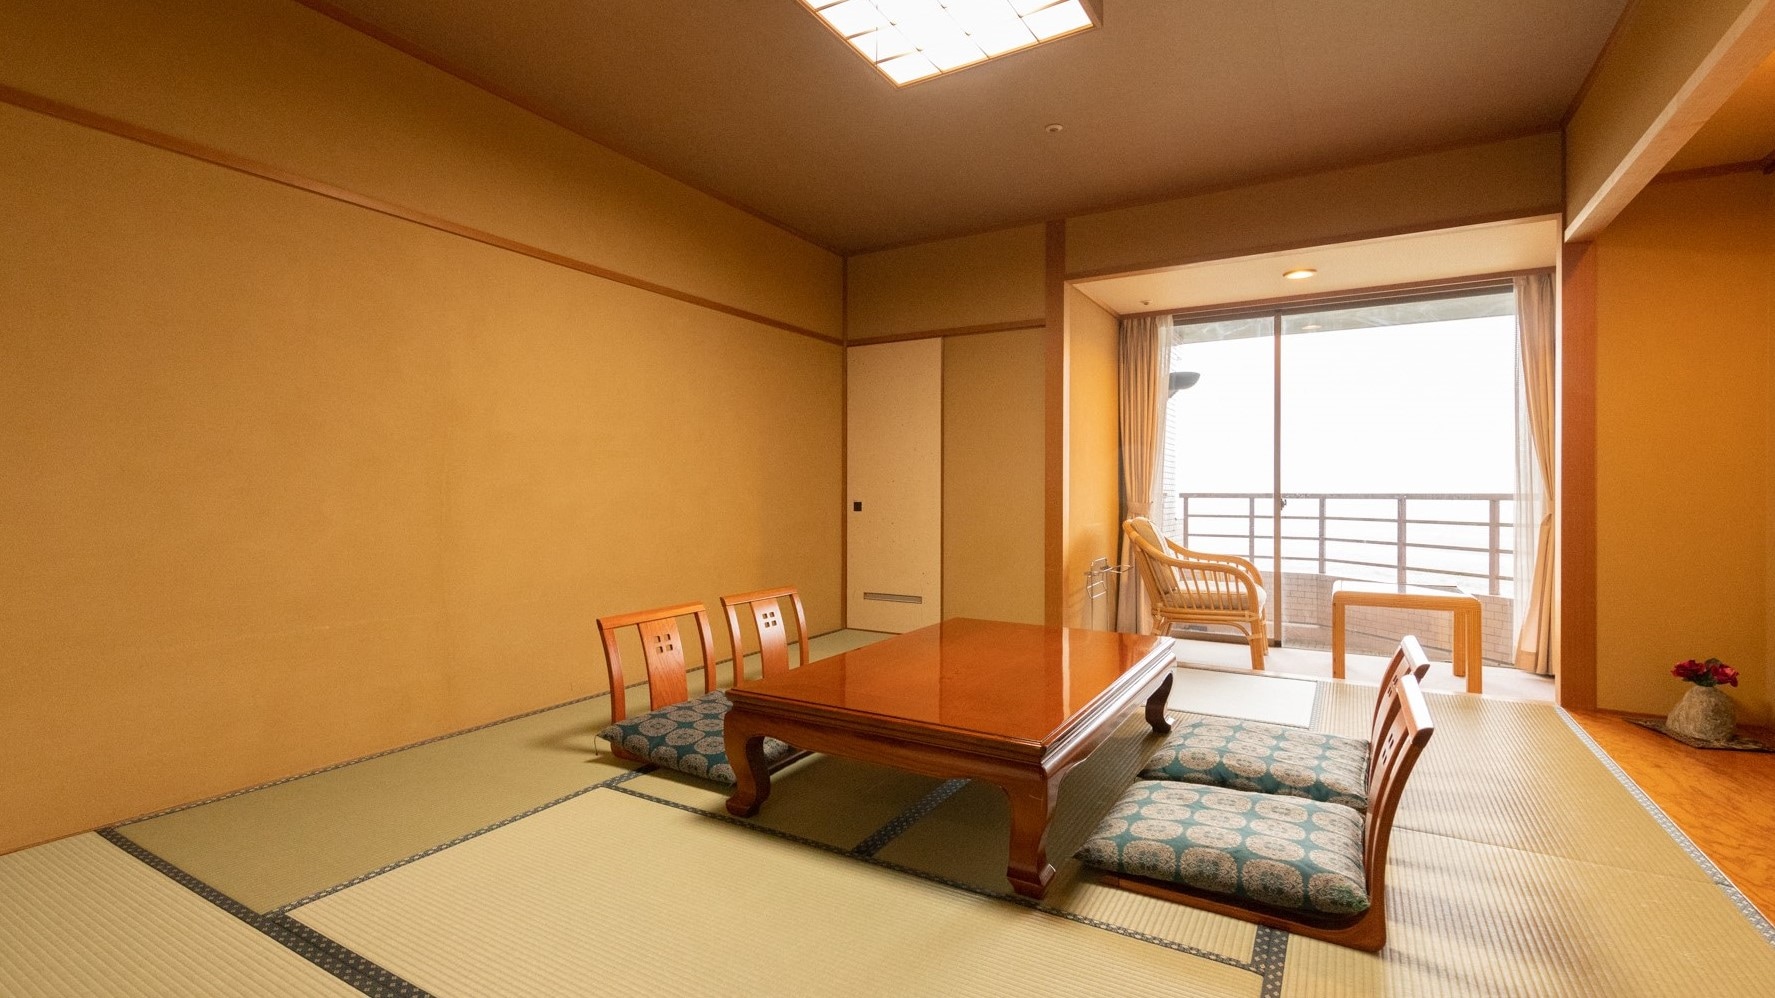  << ห้ามสูบบุหรี่ >> ห้องสไตล์ญี่ปุ่นชั้นบนสุด [ห้องพร้อมอ่างอาบน้ำ] (ฝั่งฮิเมะคาวะ)